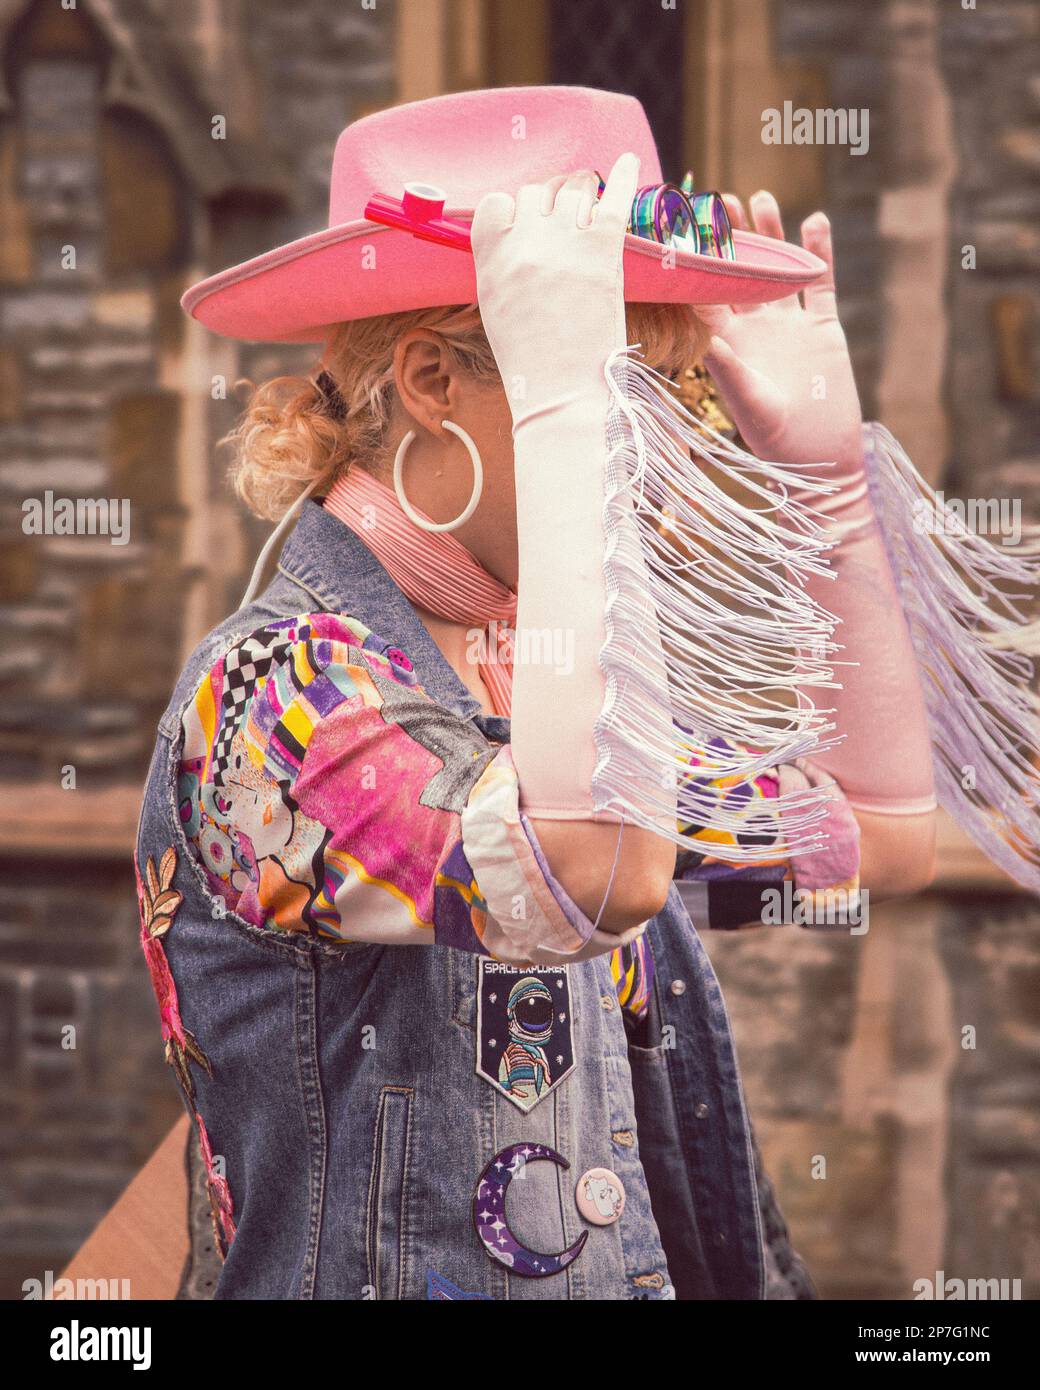 Ein Cowgirl mit einem rosa Cowboyhut, das eine Straße entlang läuft. Ihr Gesicht wird durch den Rand ihrer Handschuhe verdeckt, während sie ihren Hut anpasst. Stockfoto